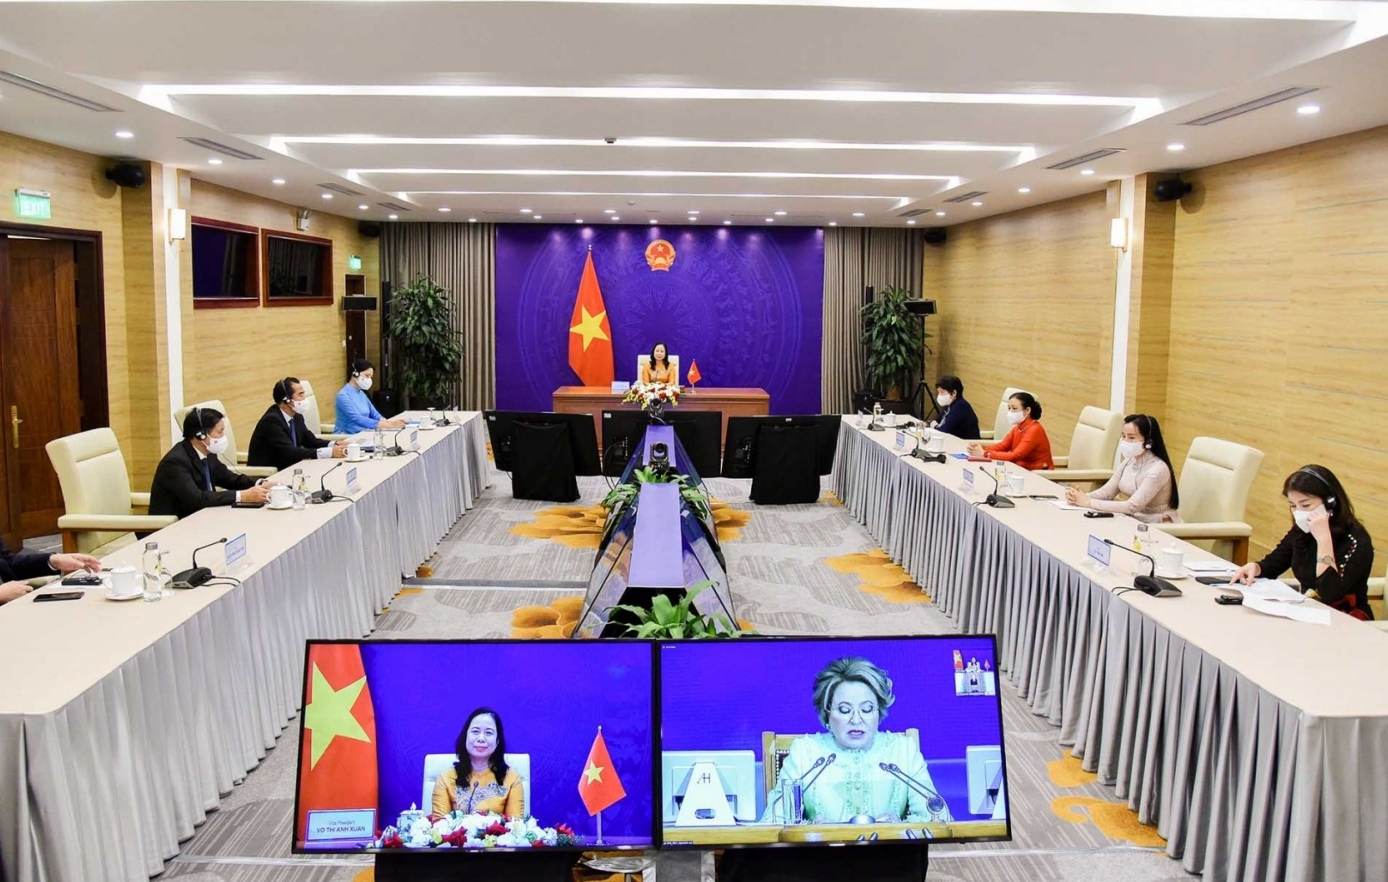 Phó Chủ tịch nước Võ Thị Ánh Xuân tham dự Diễn đàn Phụ nữ Á - Âu lần thứ III